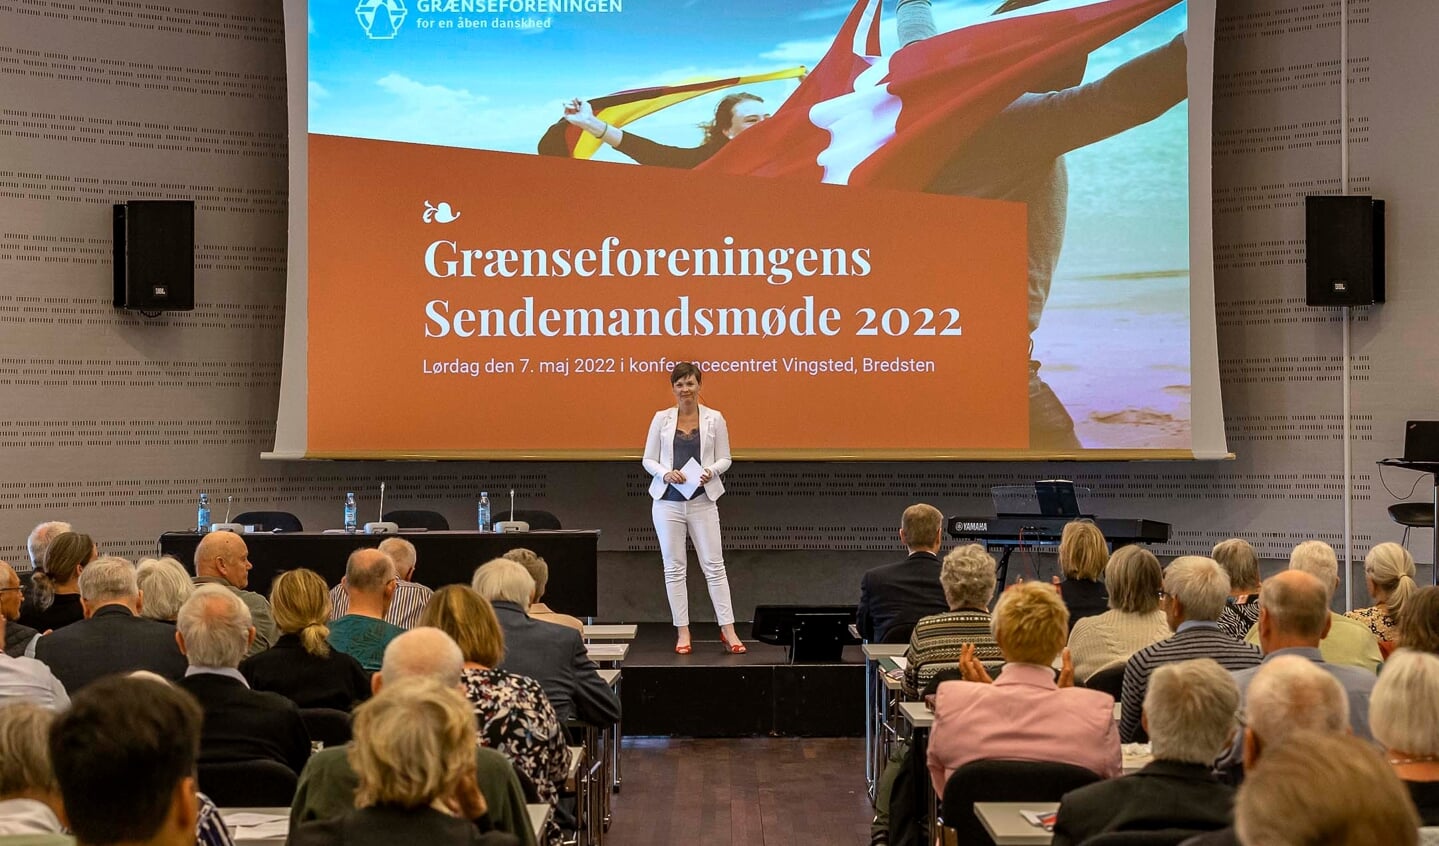 Lørdag afholder Grænseforeningen sendemandsmøde i Vingsted. Her får deltagerne blandt andet mulighed for at møde Grænseforeningens nye direktør, Hanne Sundin.